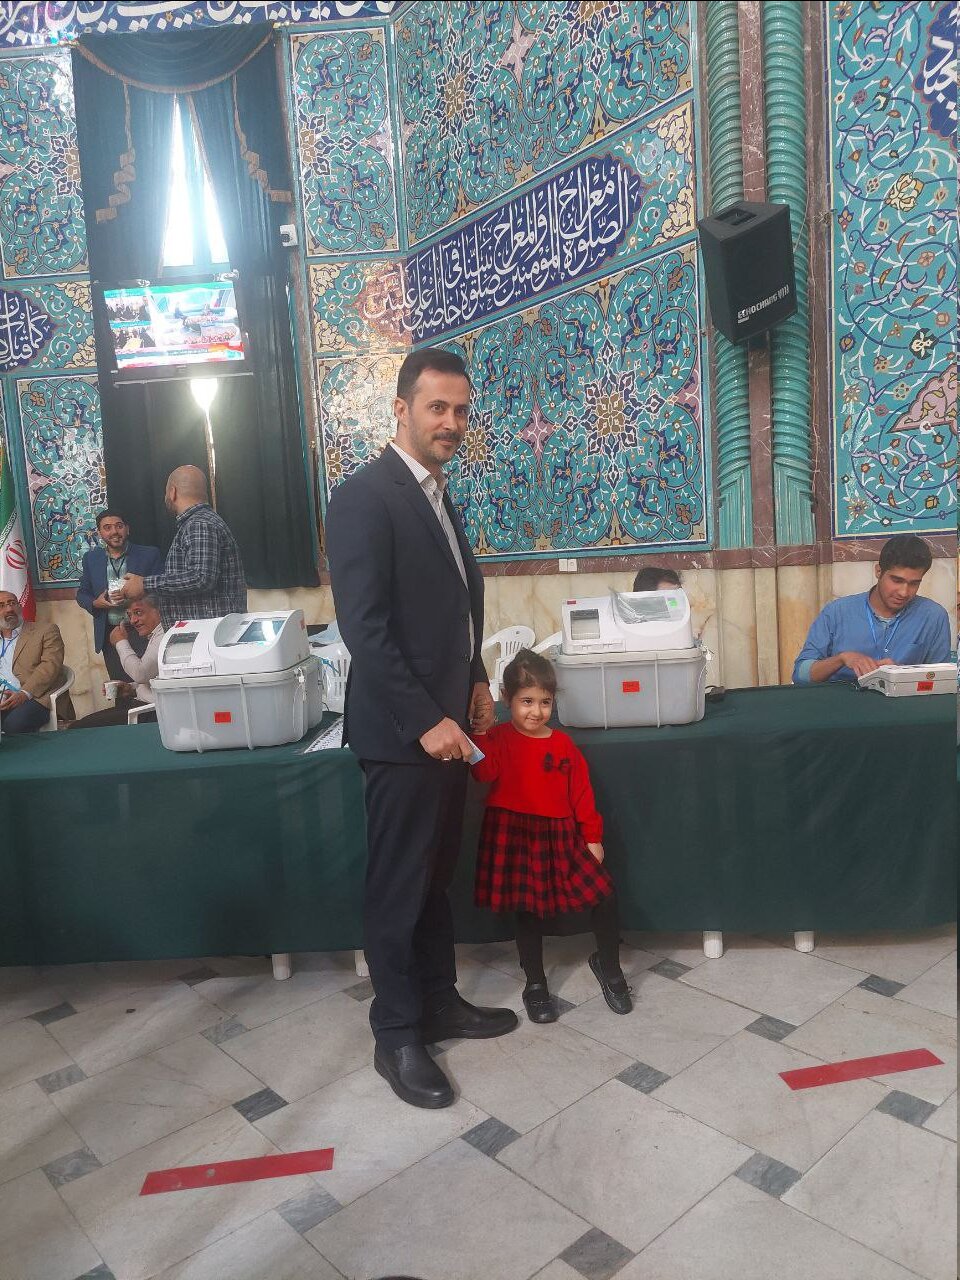 تصاویری از حضور پدر و دختری در پای صندوق رأی /عکس سردار سلیمانی در دست یک رأی دهنده /حاشیه های انتخابات دور دوم مجلس